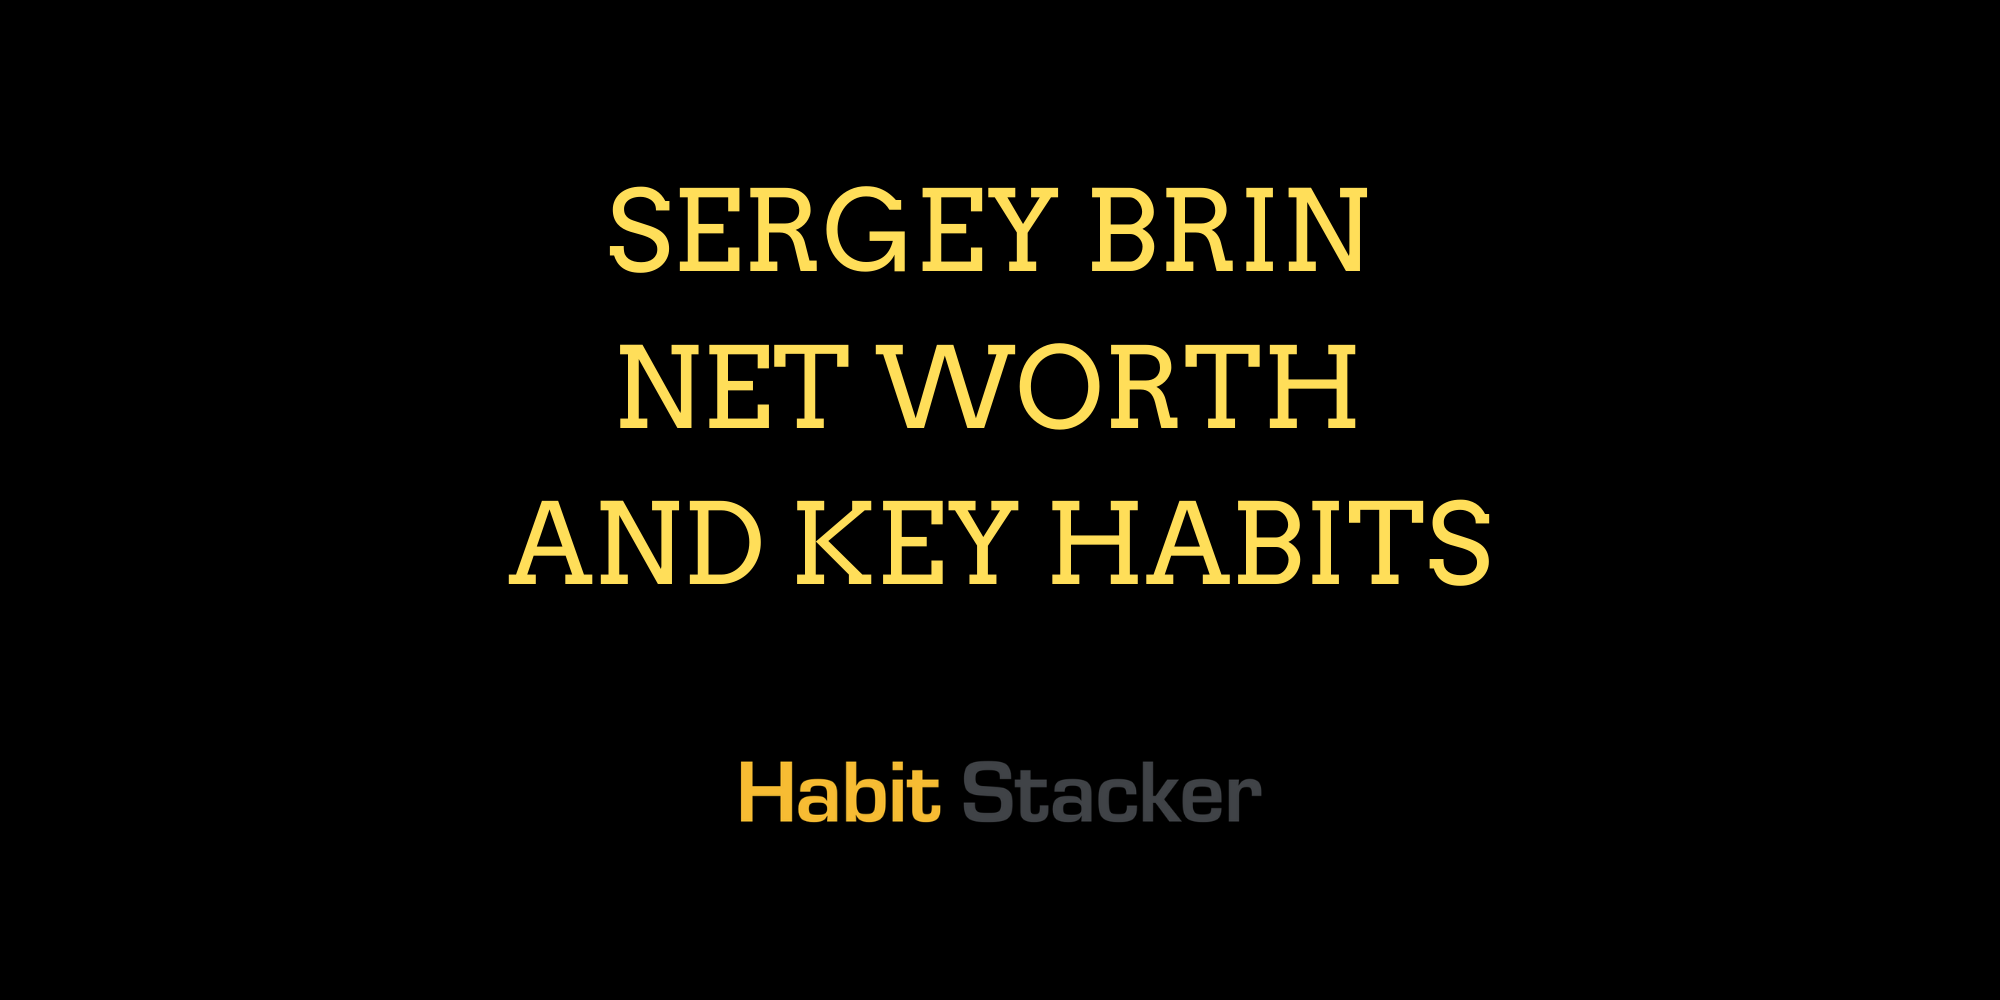 Sergey Brin Net Worth and Key Habits